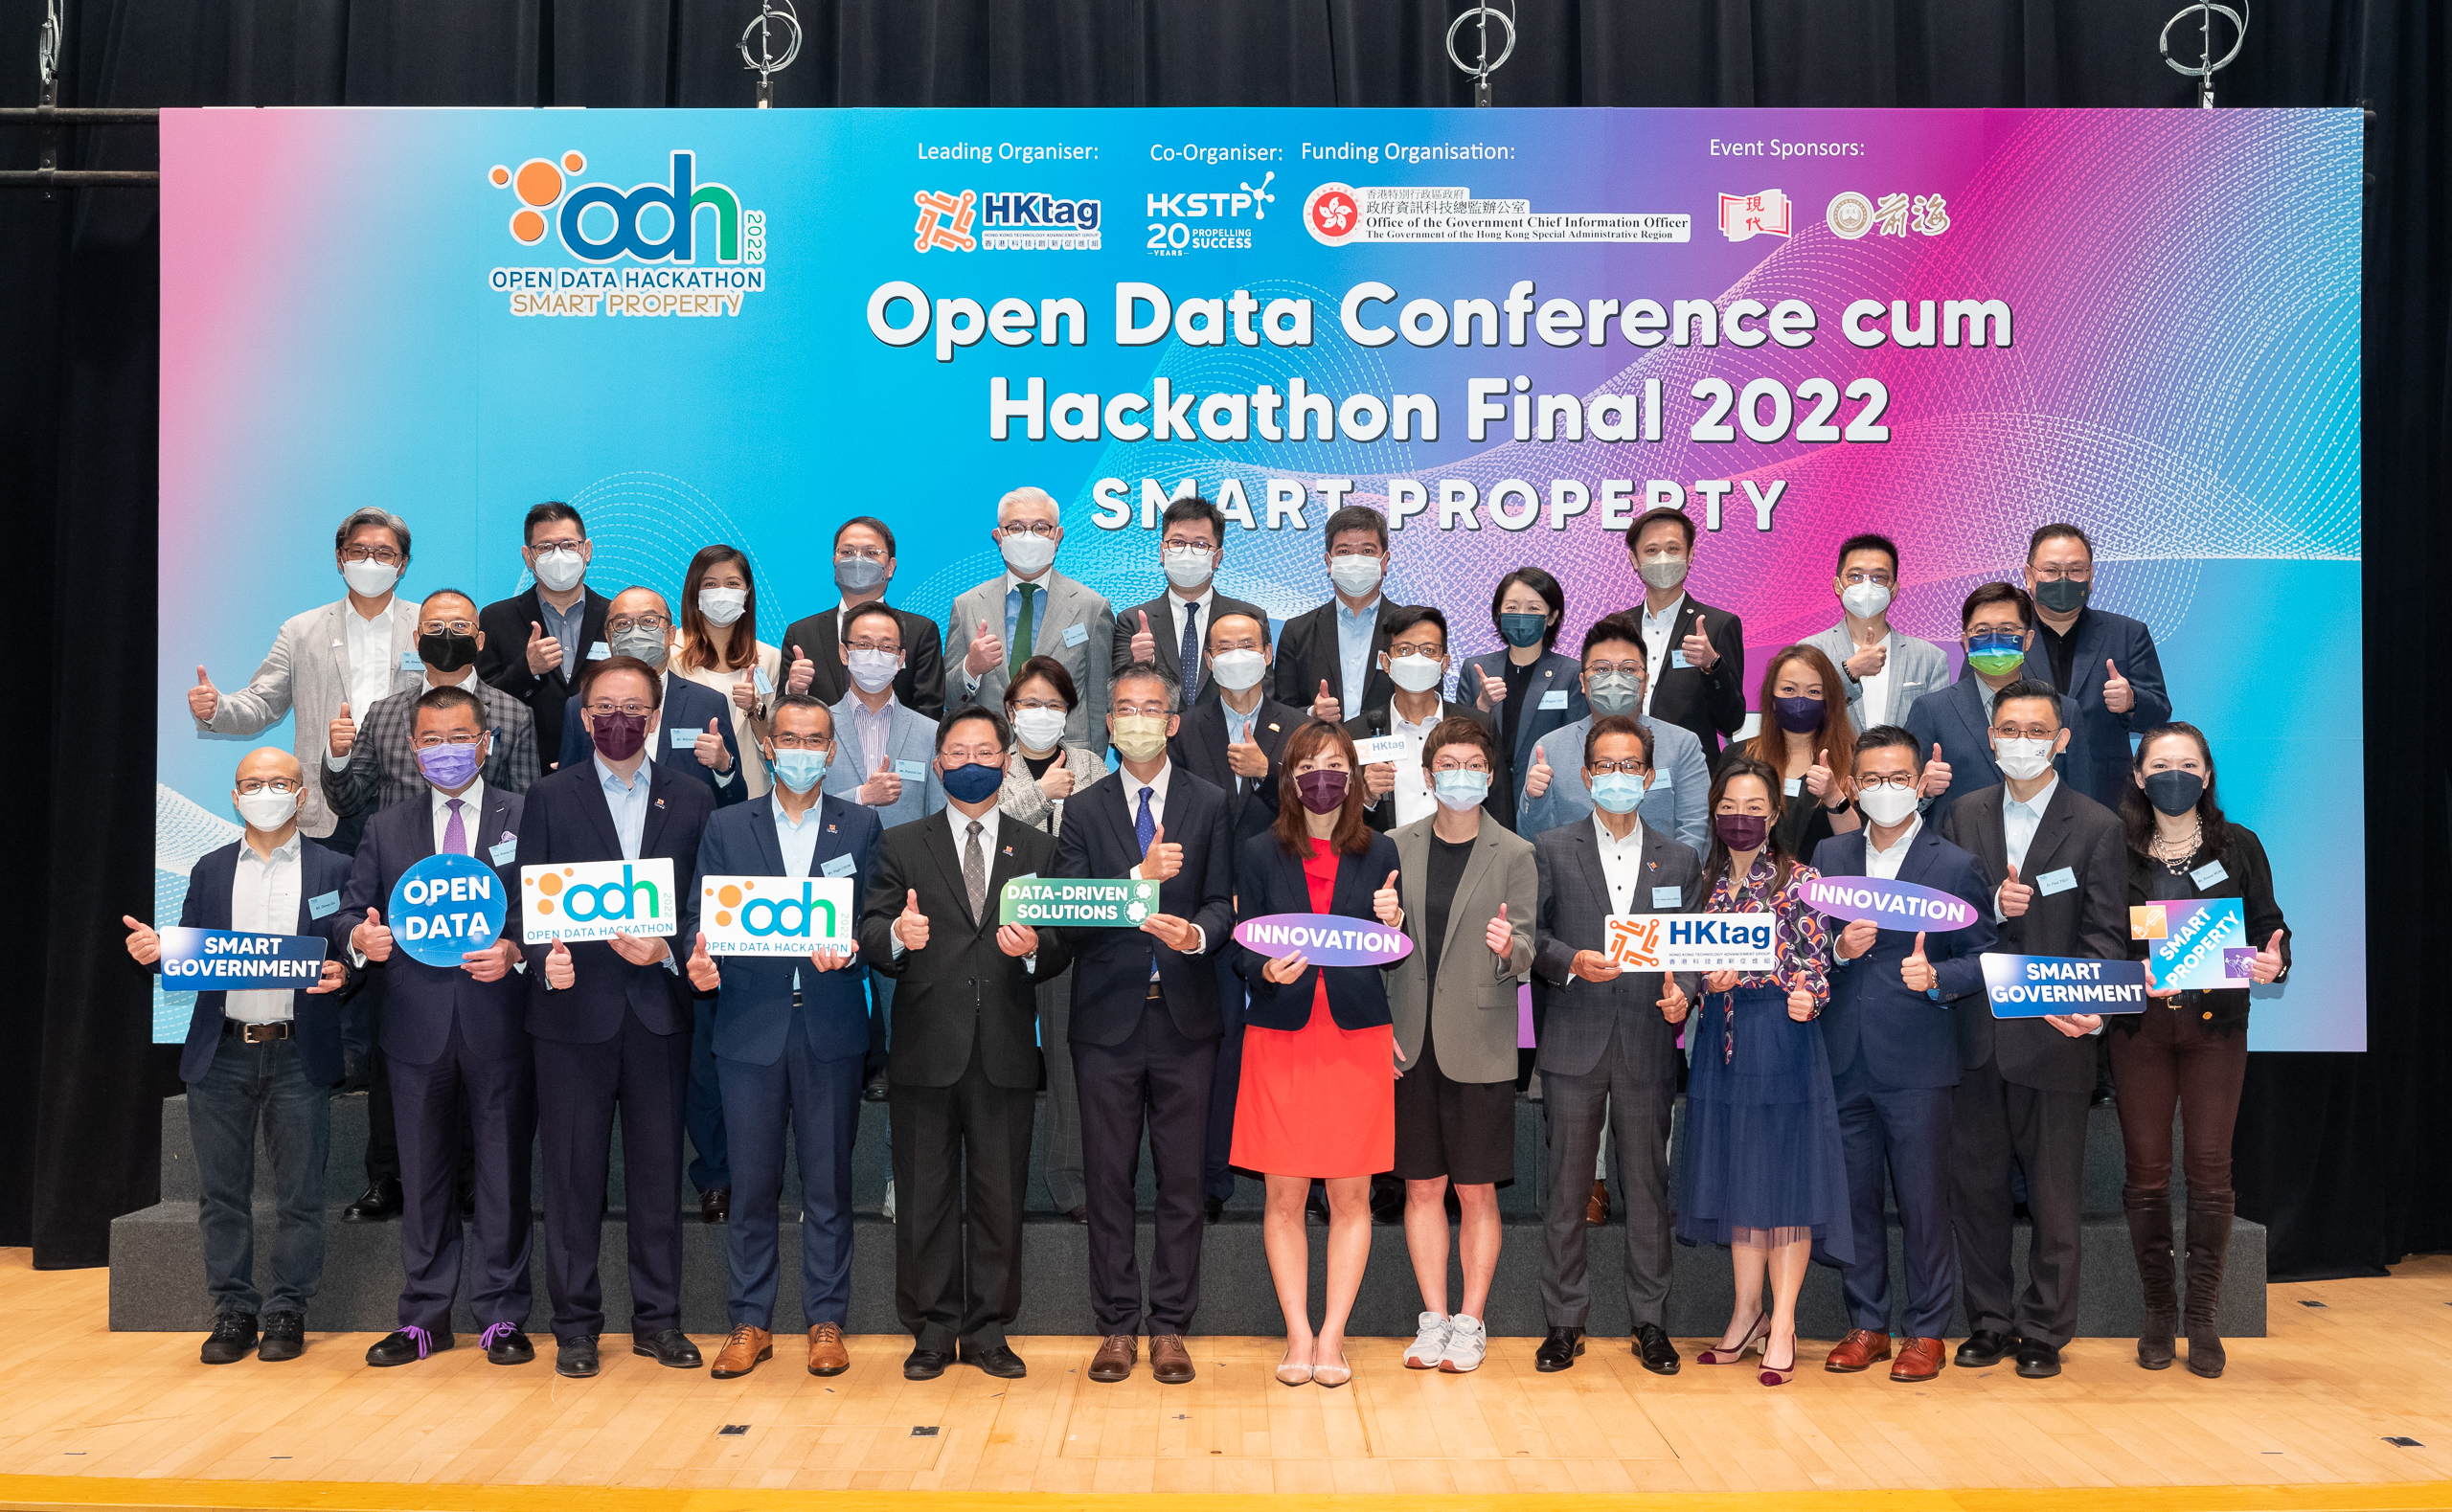 Open Data Conference cum Hackathon Final 2022